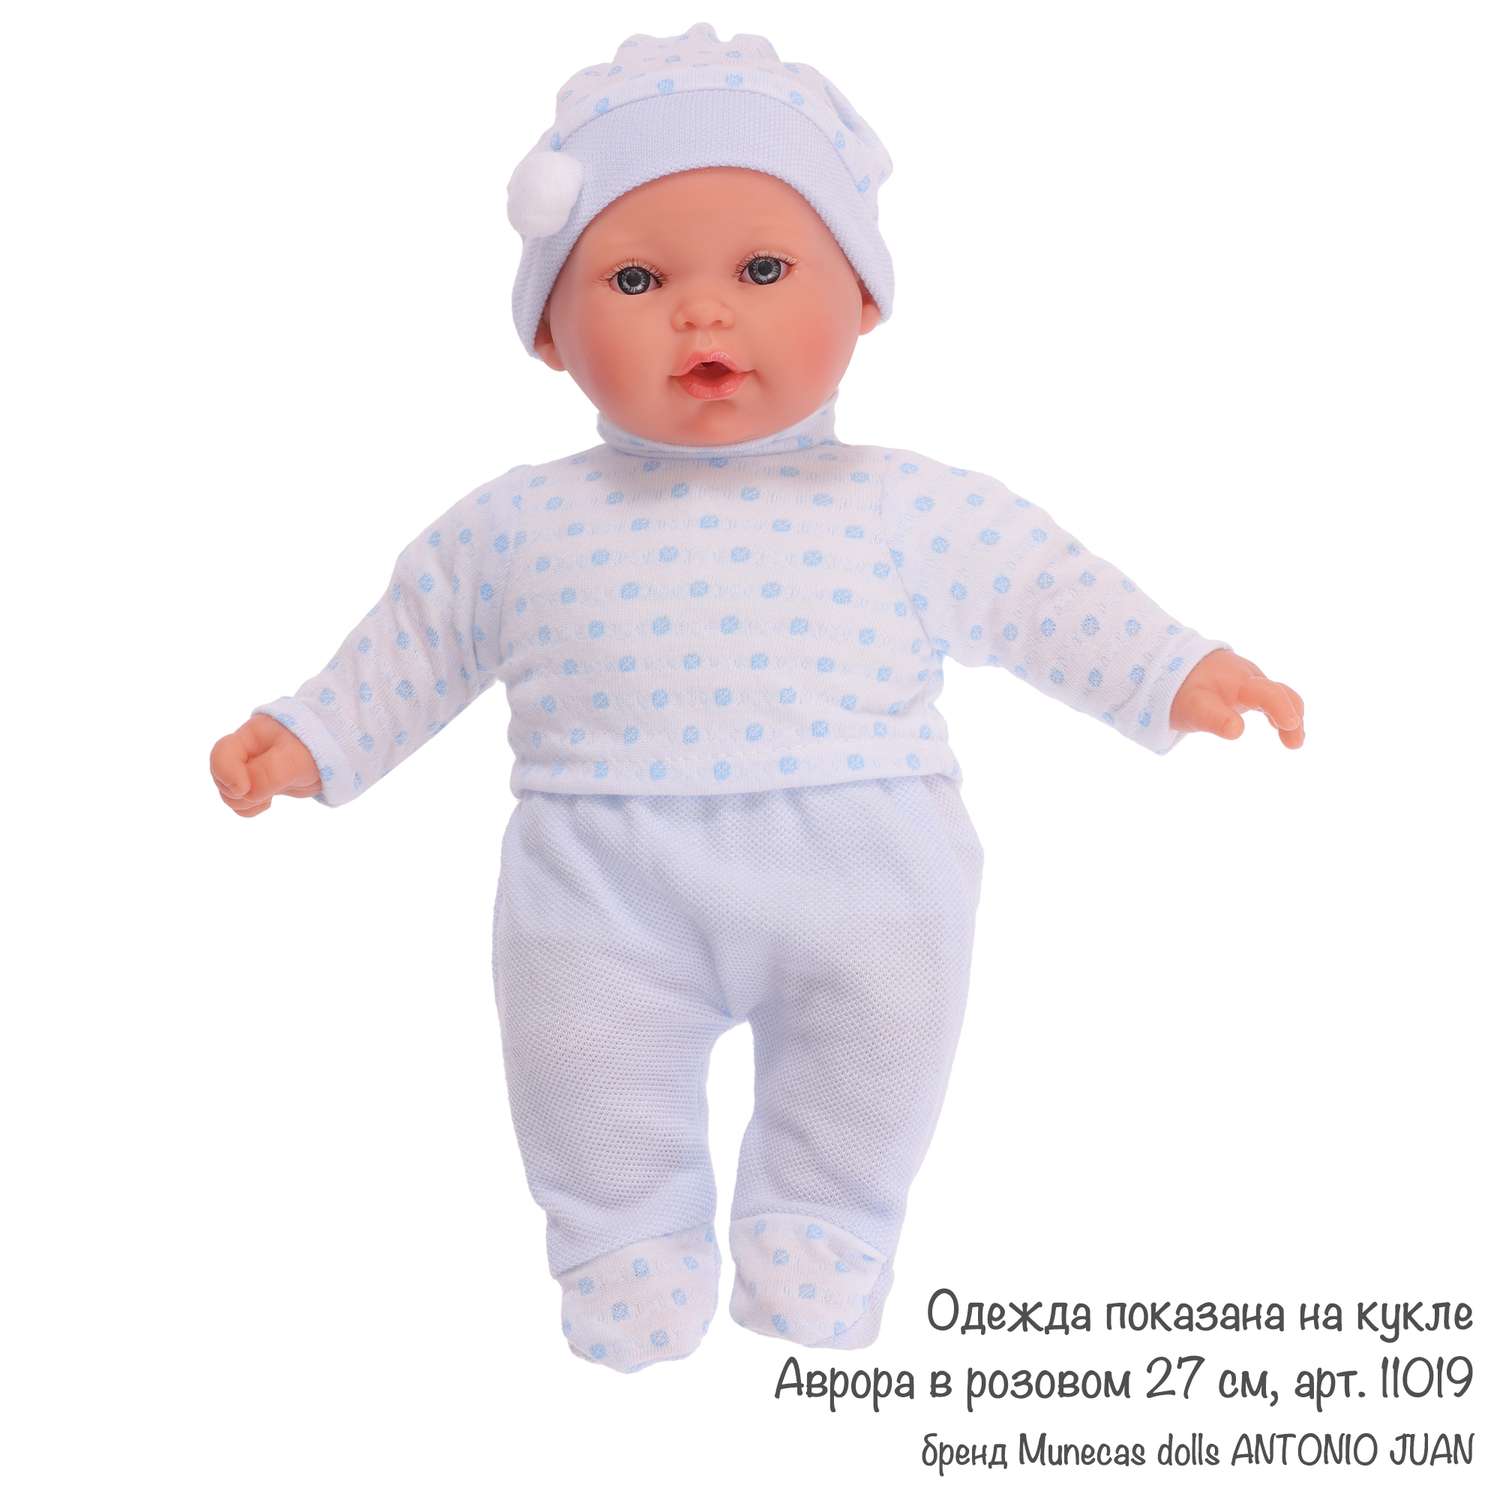 Одежда для кукол и пупсов Antonio Juan 25 - 29 см кофта ползунки шапка с помпоном 91026-17 - фото 9